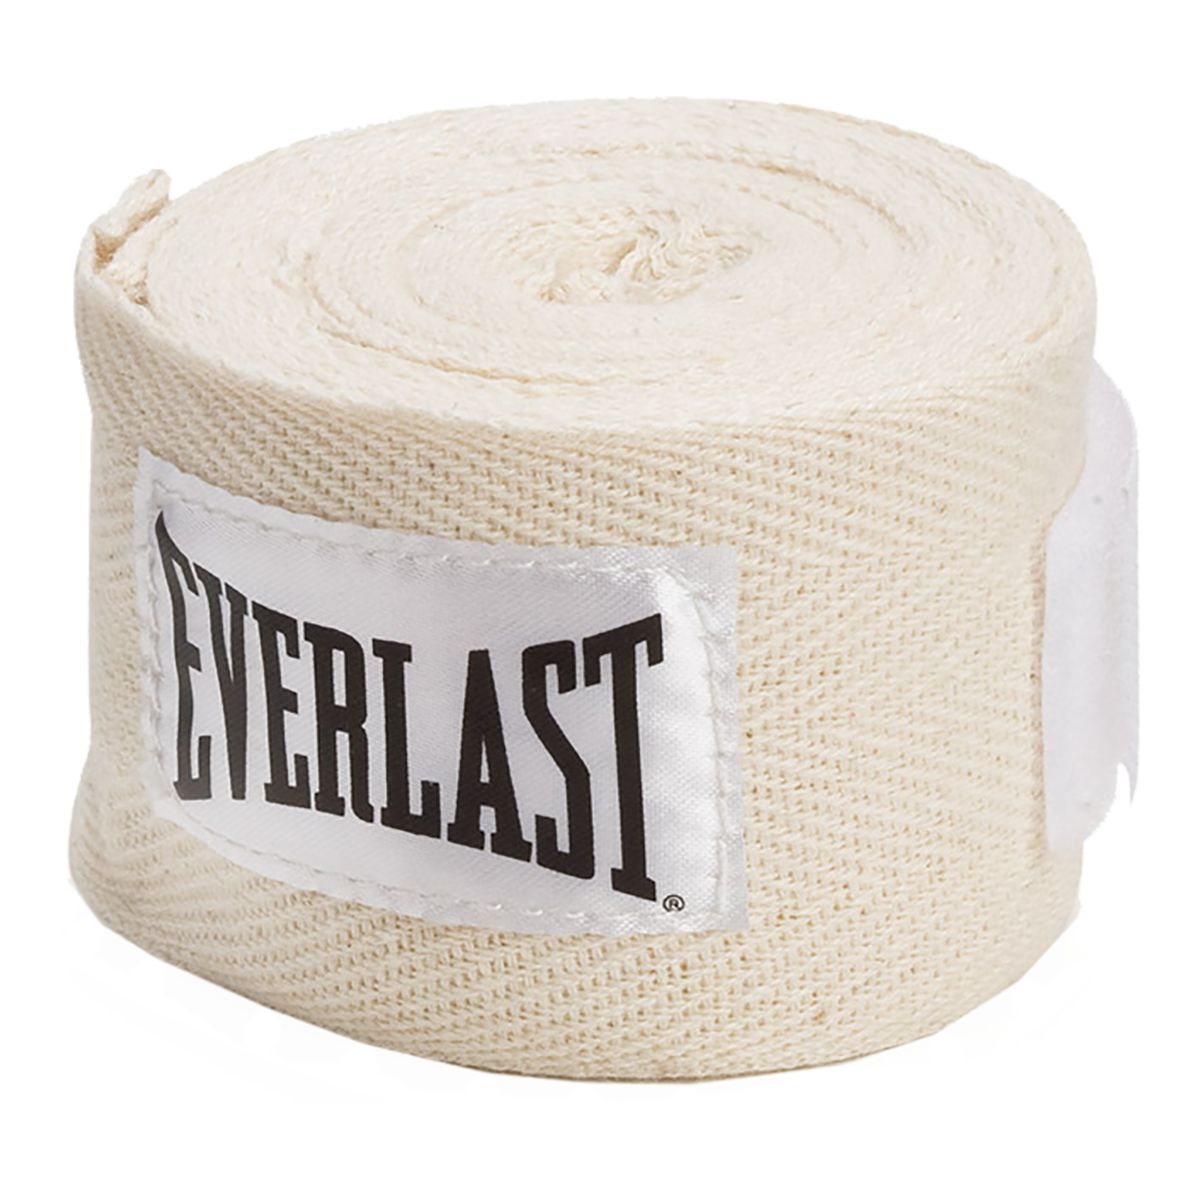 Everlast 120 Inch Handwraps - Natural